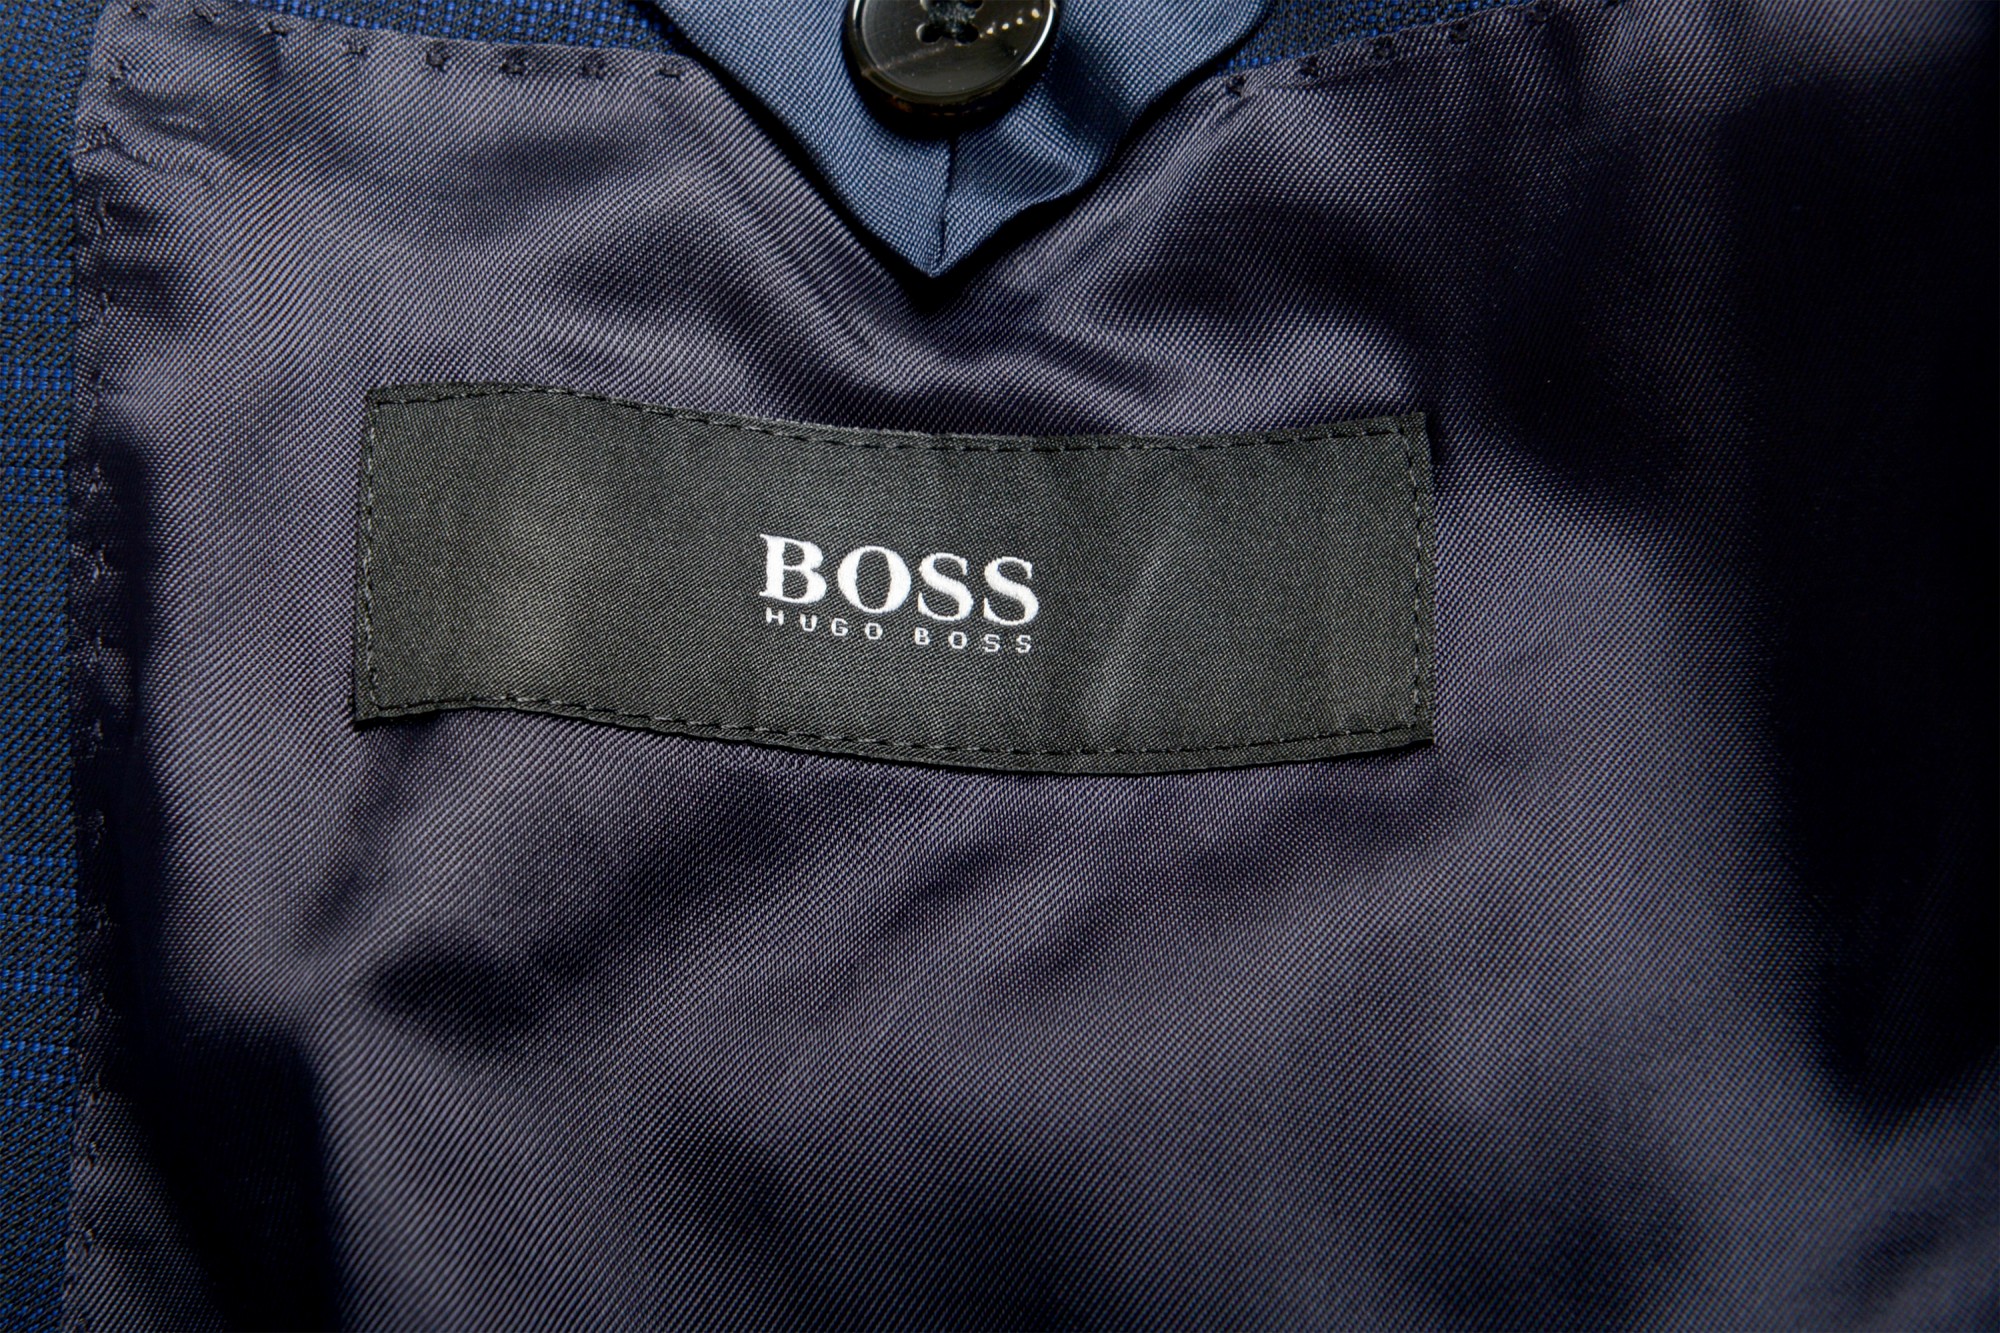 Hugo Boss Men's 